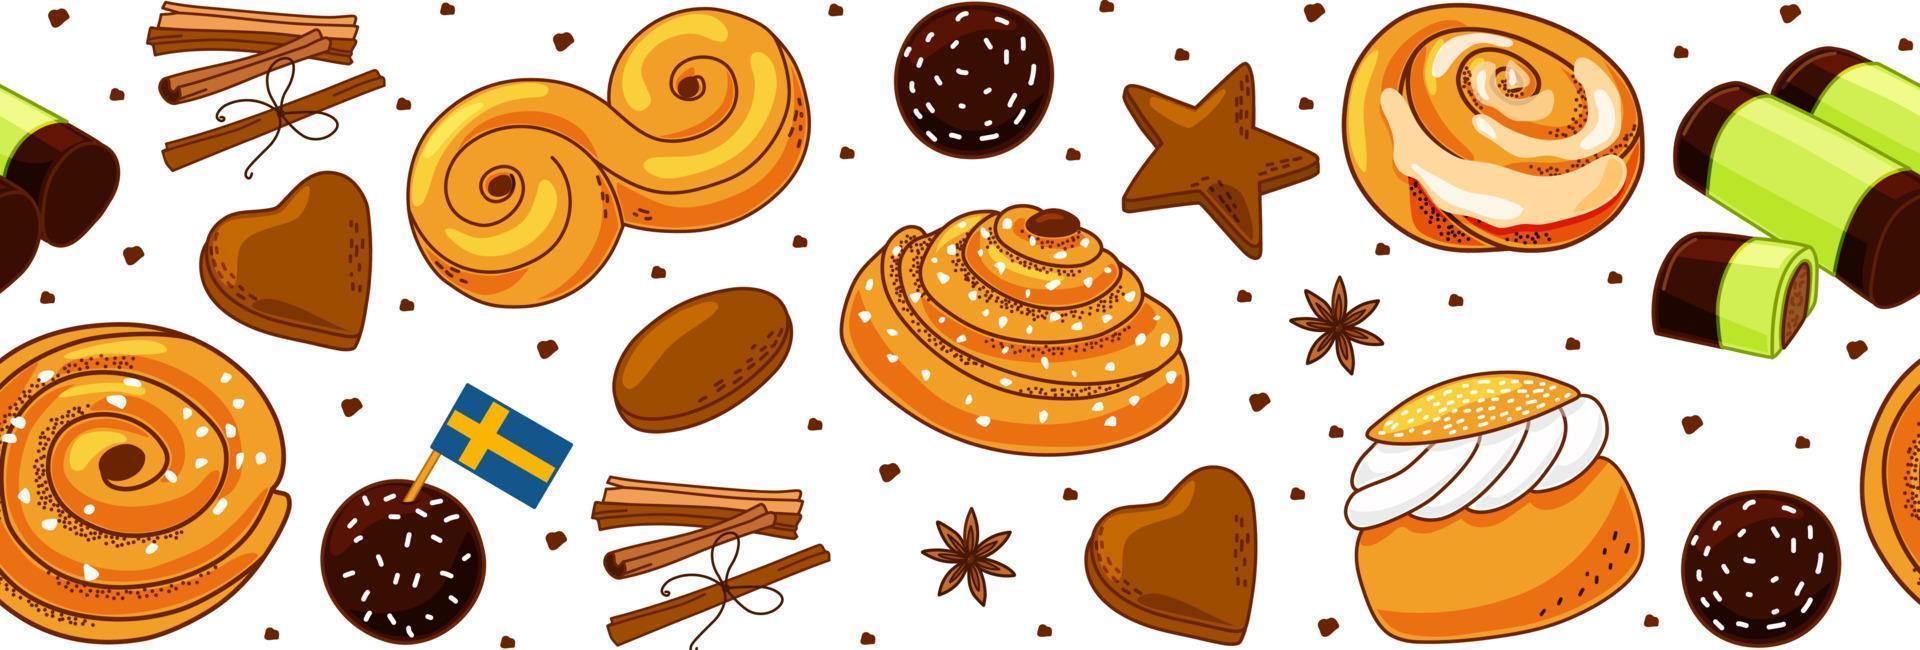 bordo senza giunte di dolci tradizionali svedesi. panino kanelbulle, rotolo alla cannella, pepparkakor, semla, lussekatt, dammsugare e chokladboll. illustrazione del fumetto di vettore